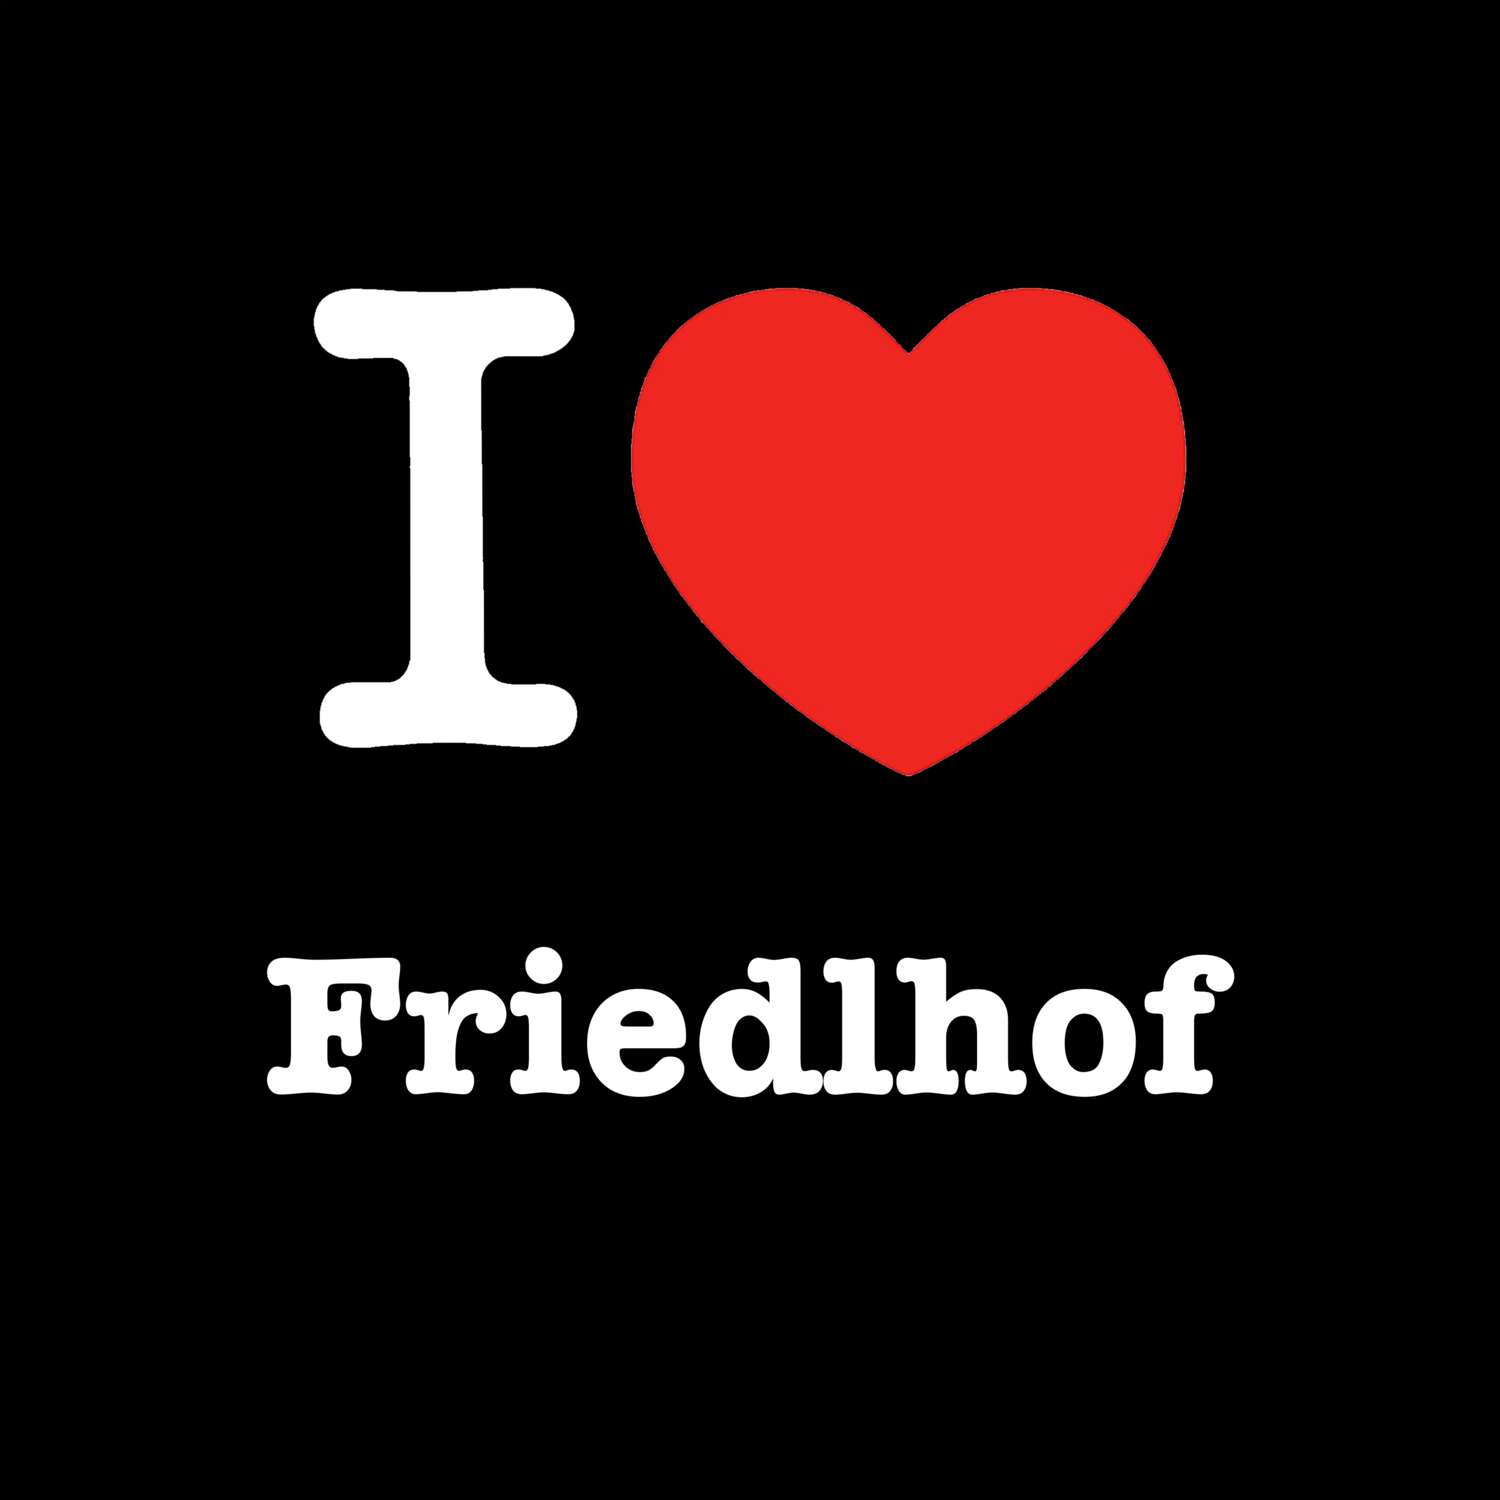 Friedlhof T-Shirt »I love«